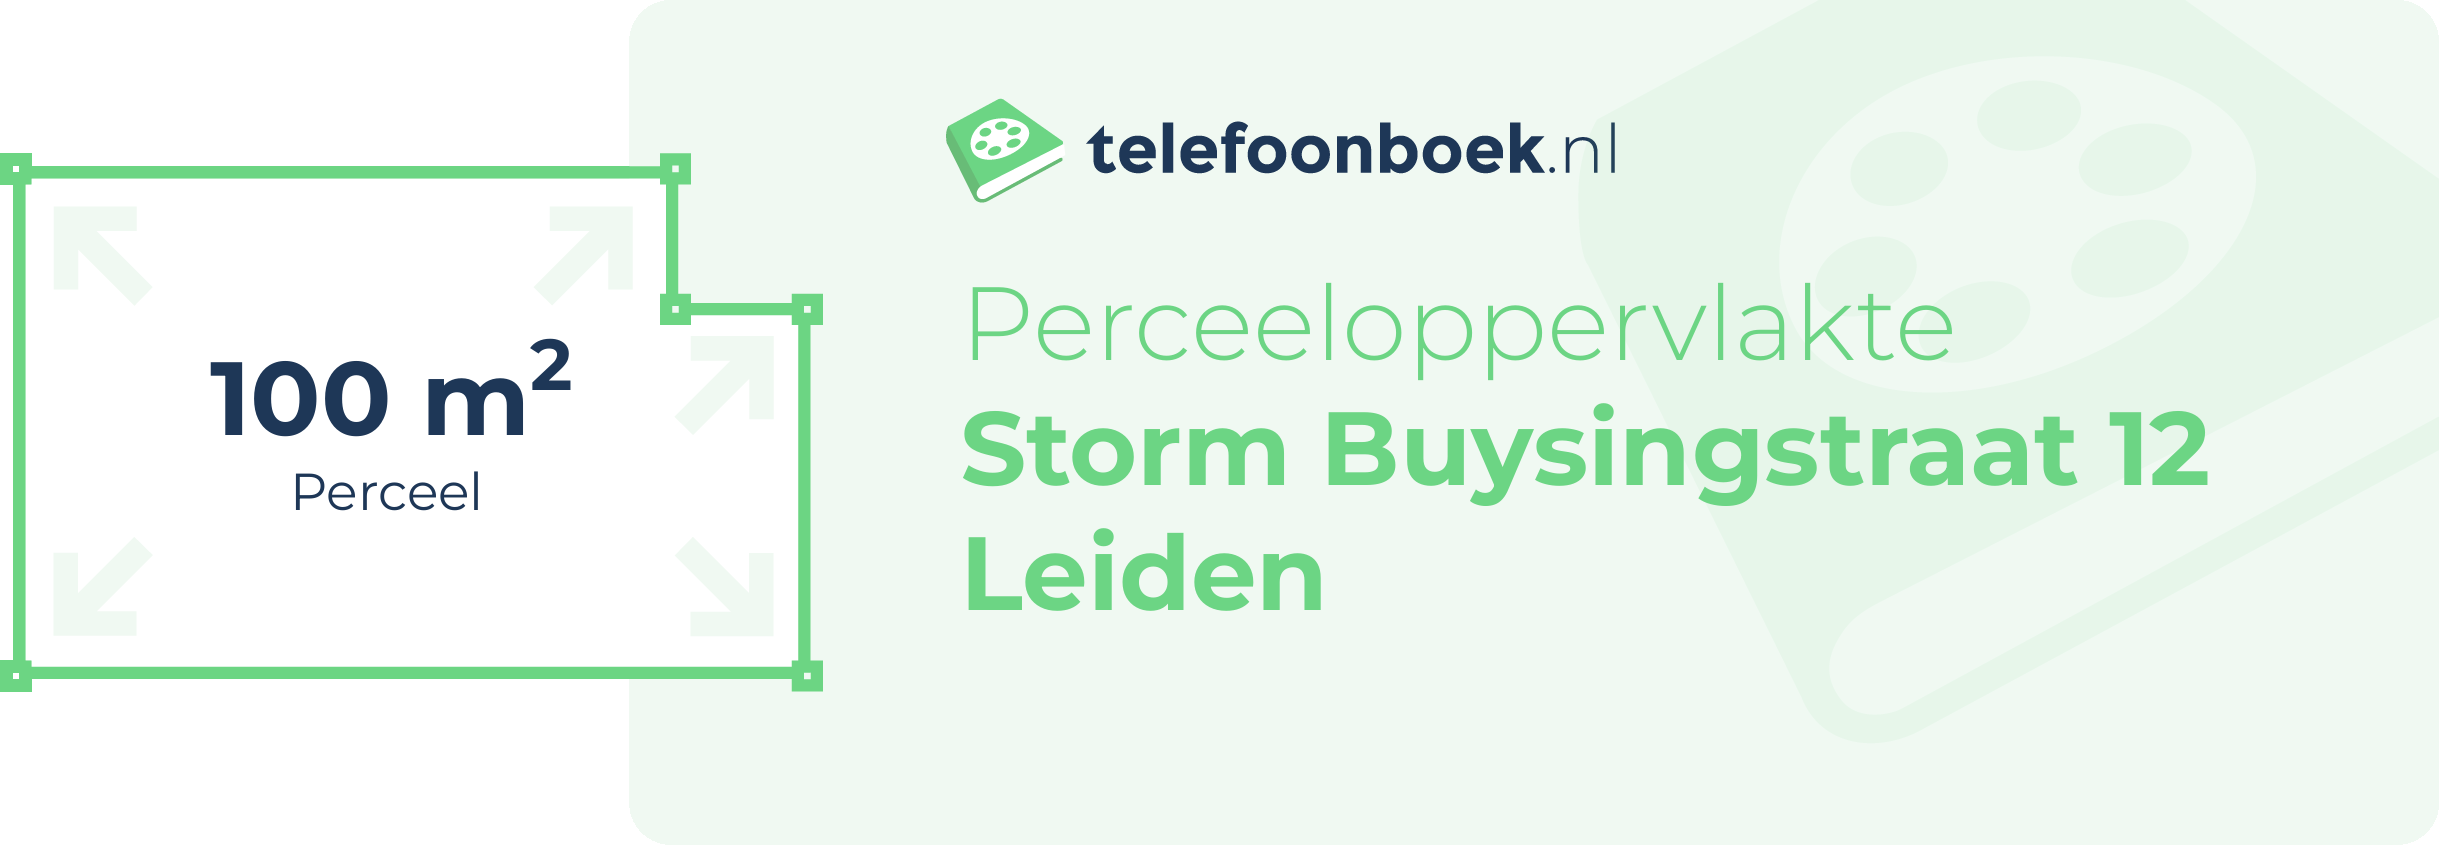 Perceeloppervlakte Storm Buysingstraat 12 Leiden